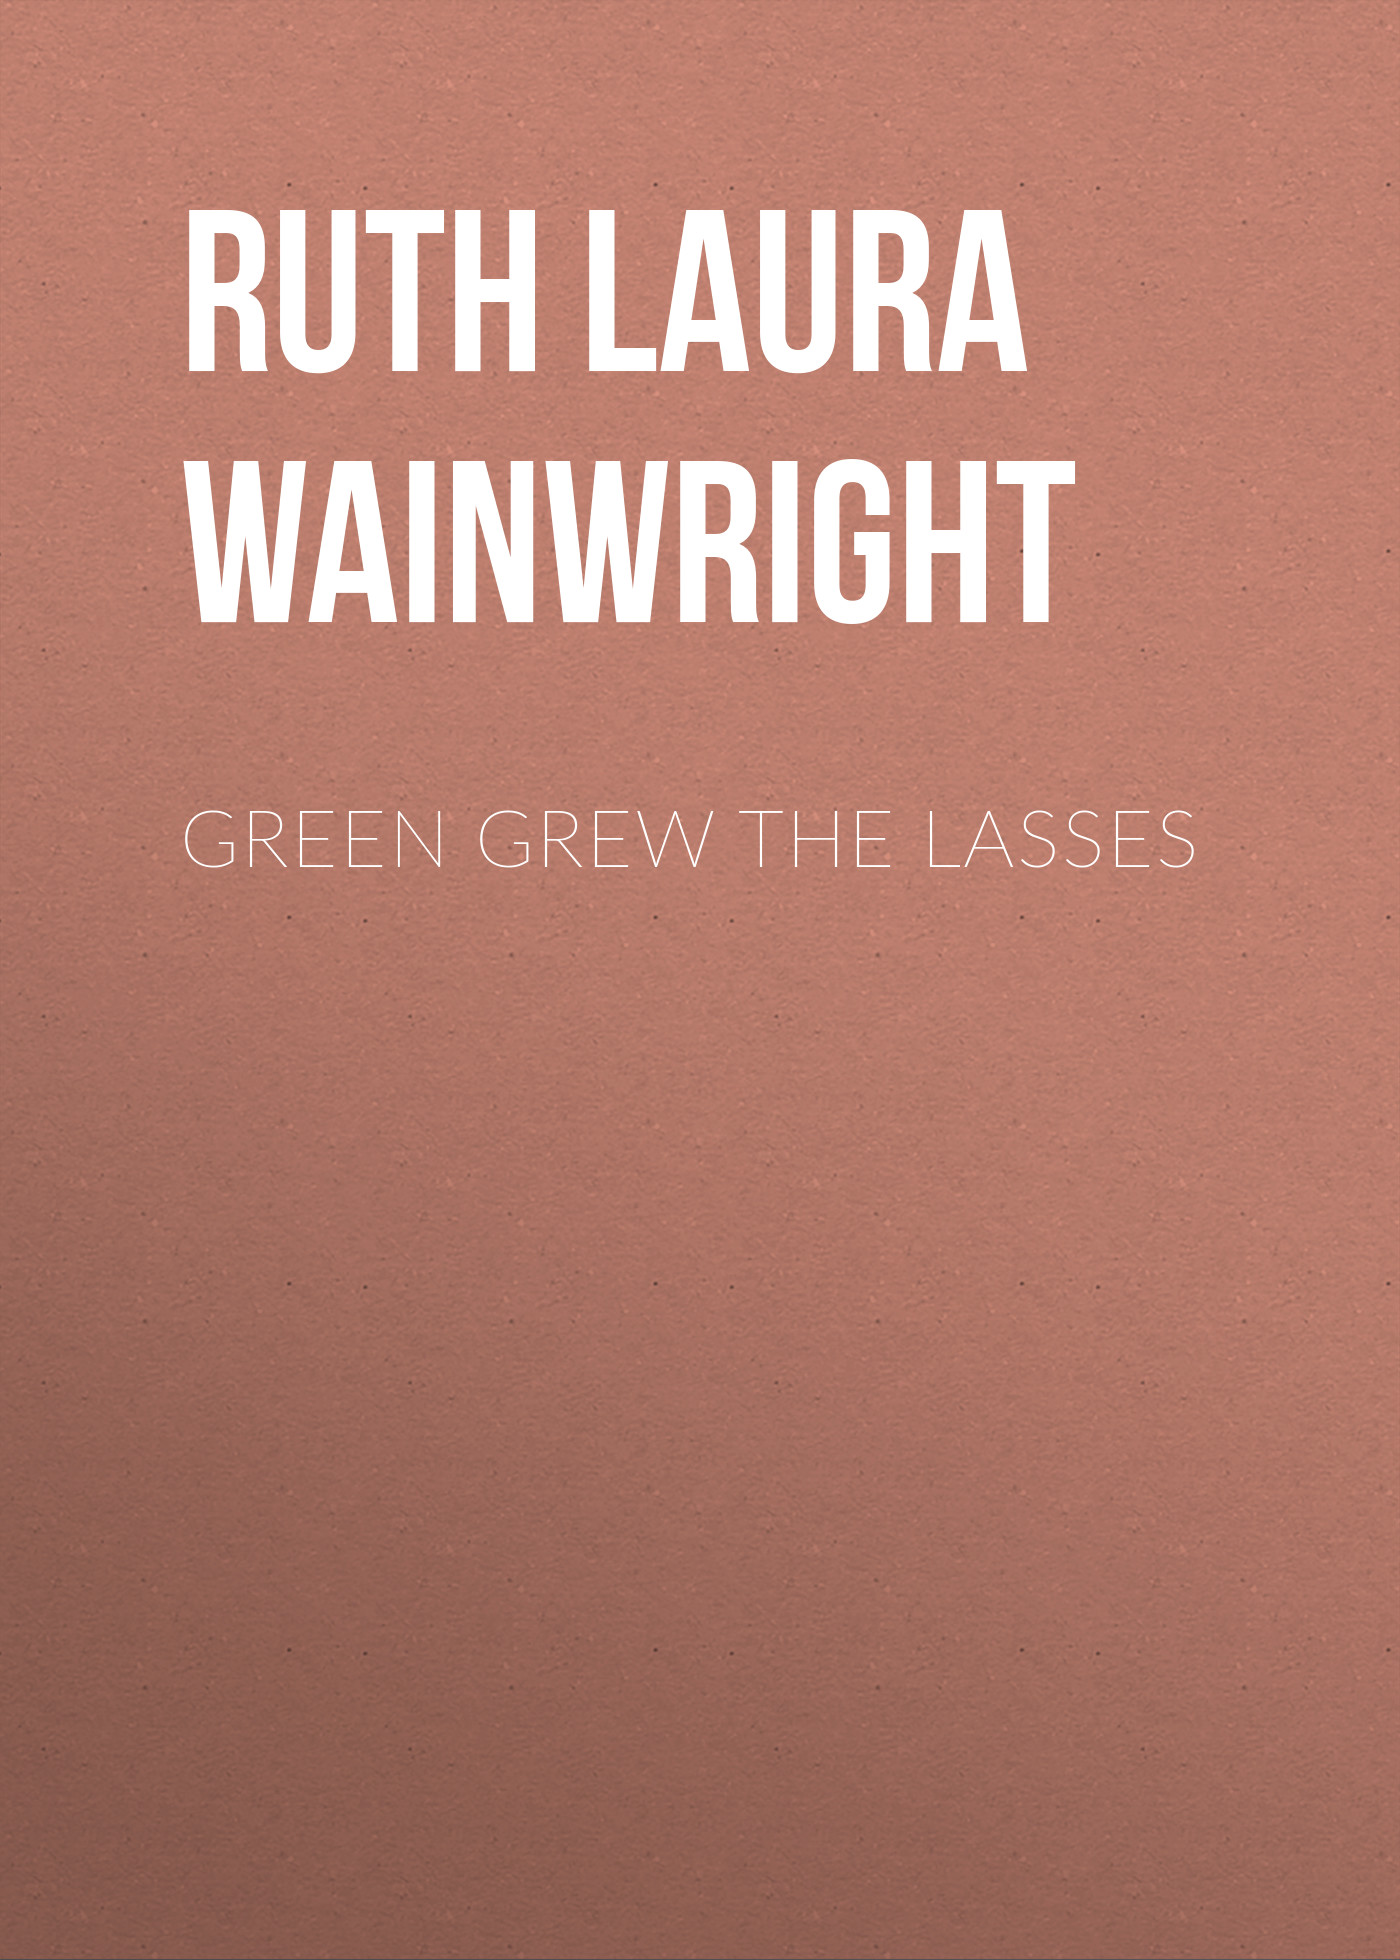 Книга Green Grew the Lasses из серии , созданная Ruth Wainwright, может относится к жанру Зарубежная классика, Зарубежная старинная литература. Стоимость электронной книги Green Grew the Lasses с идентификатором 34283280 составляет 0 руб.